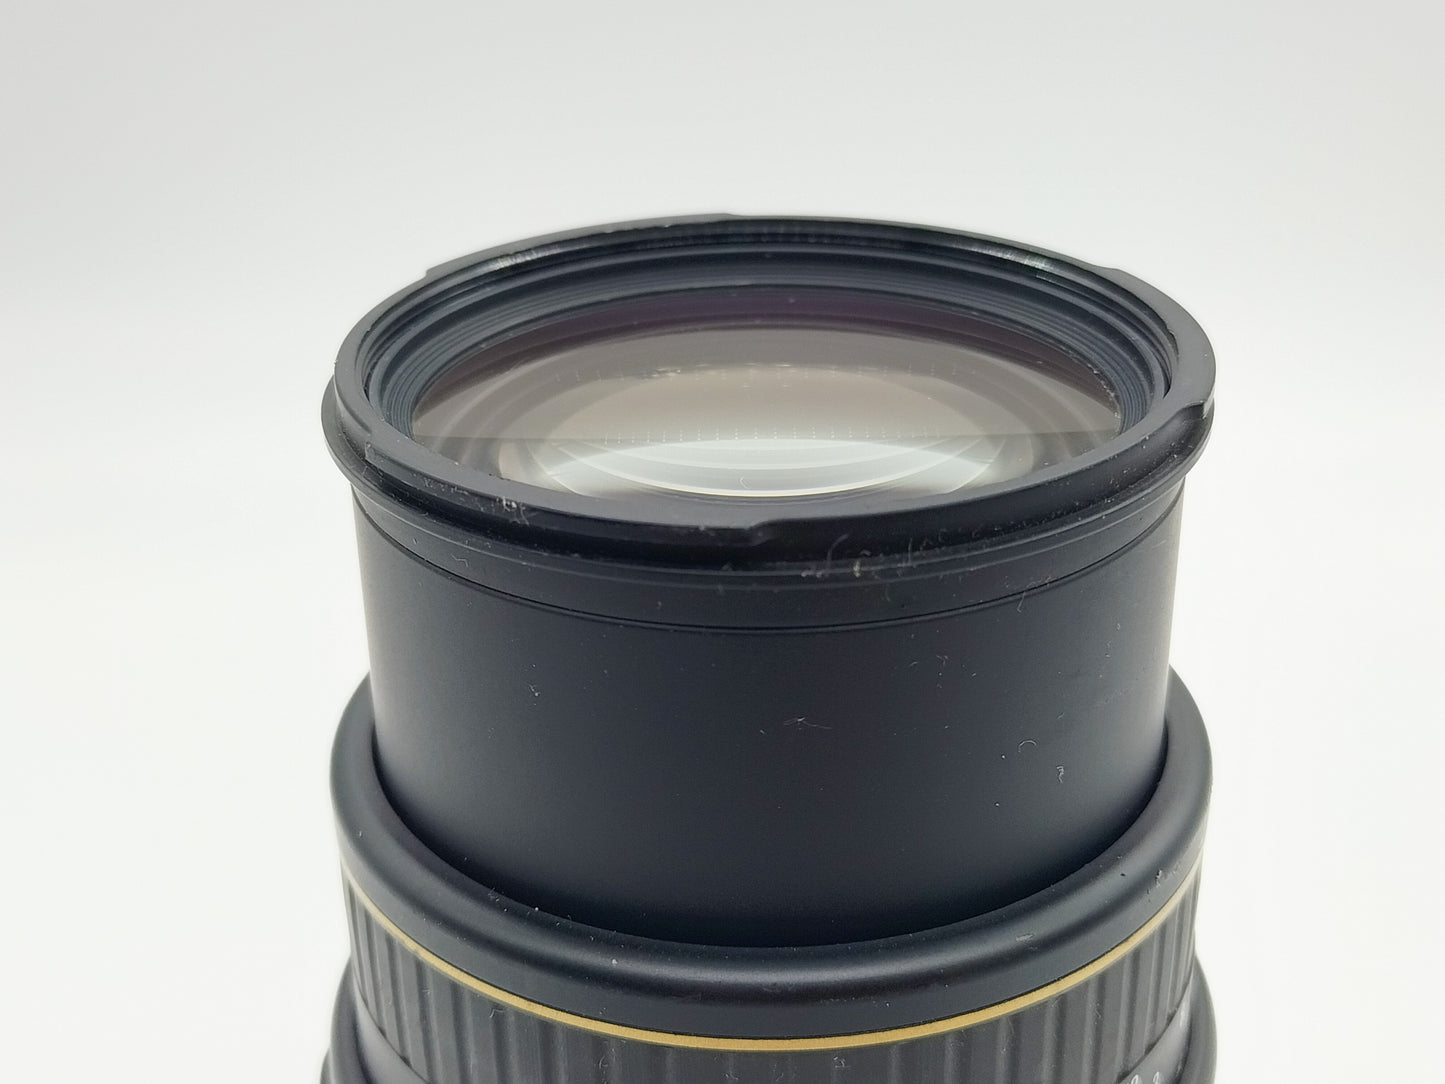 Sigma 70-210mm Autofocus APO Macro f/3.5 lens